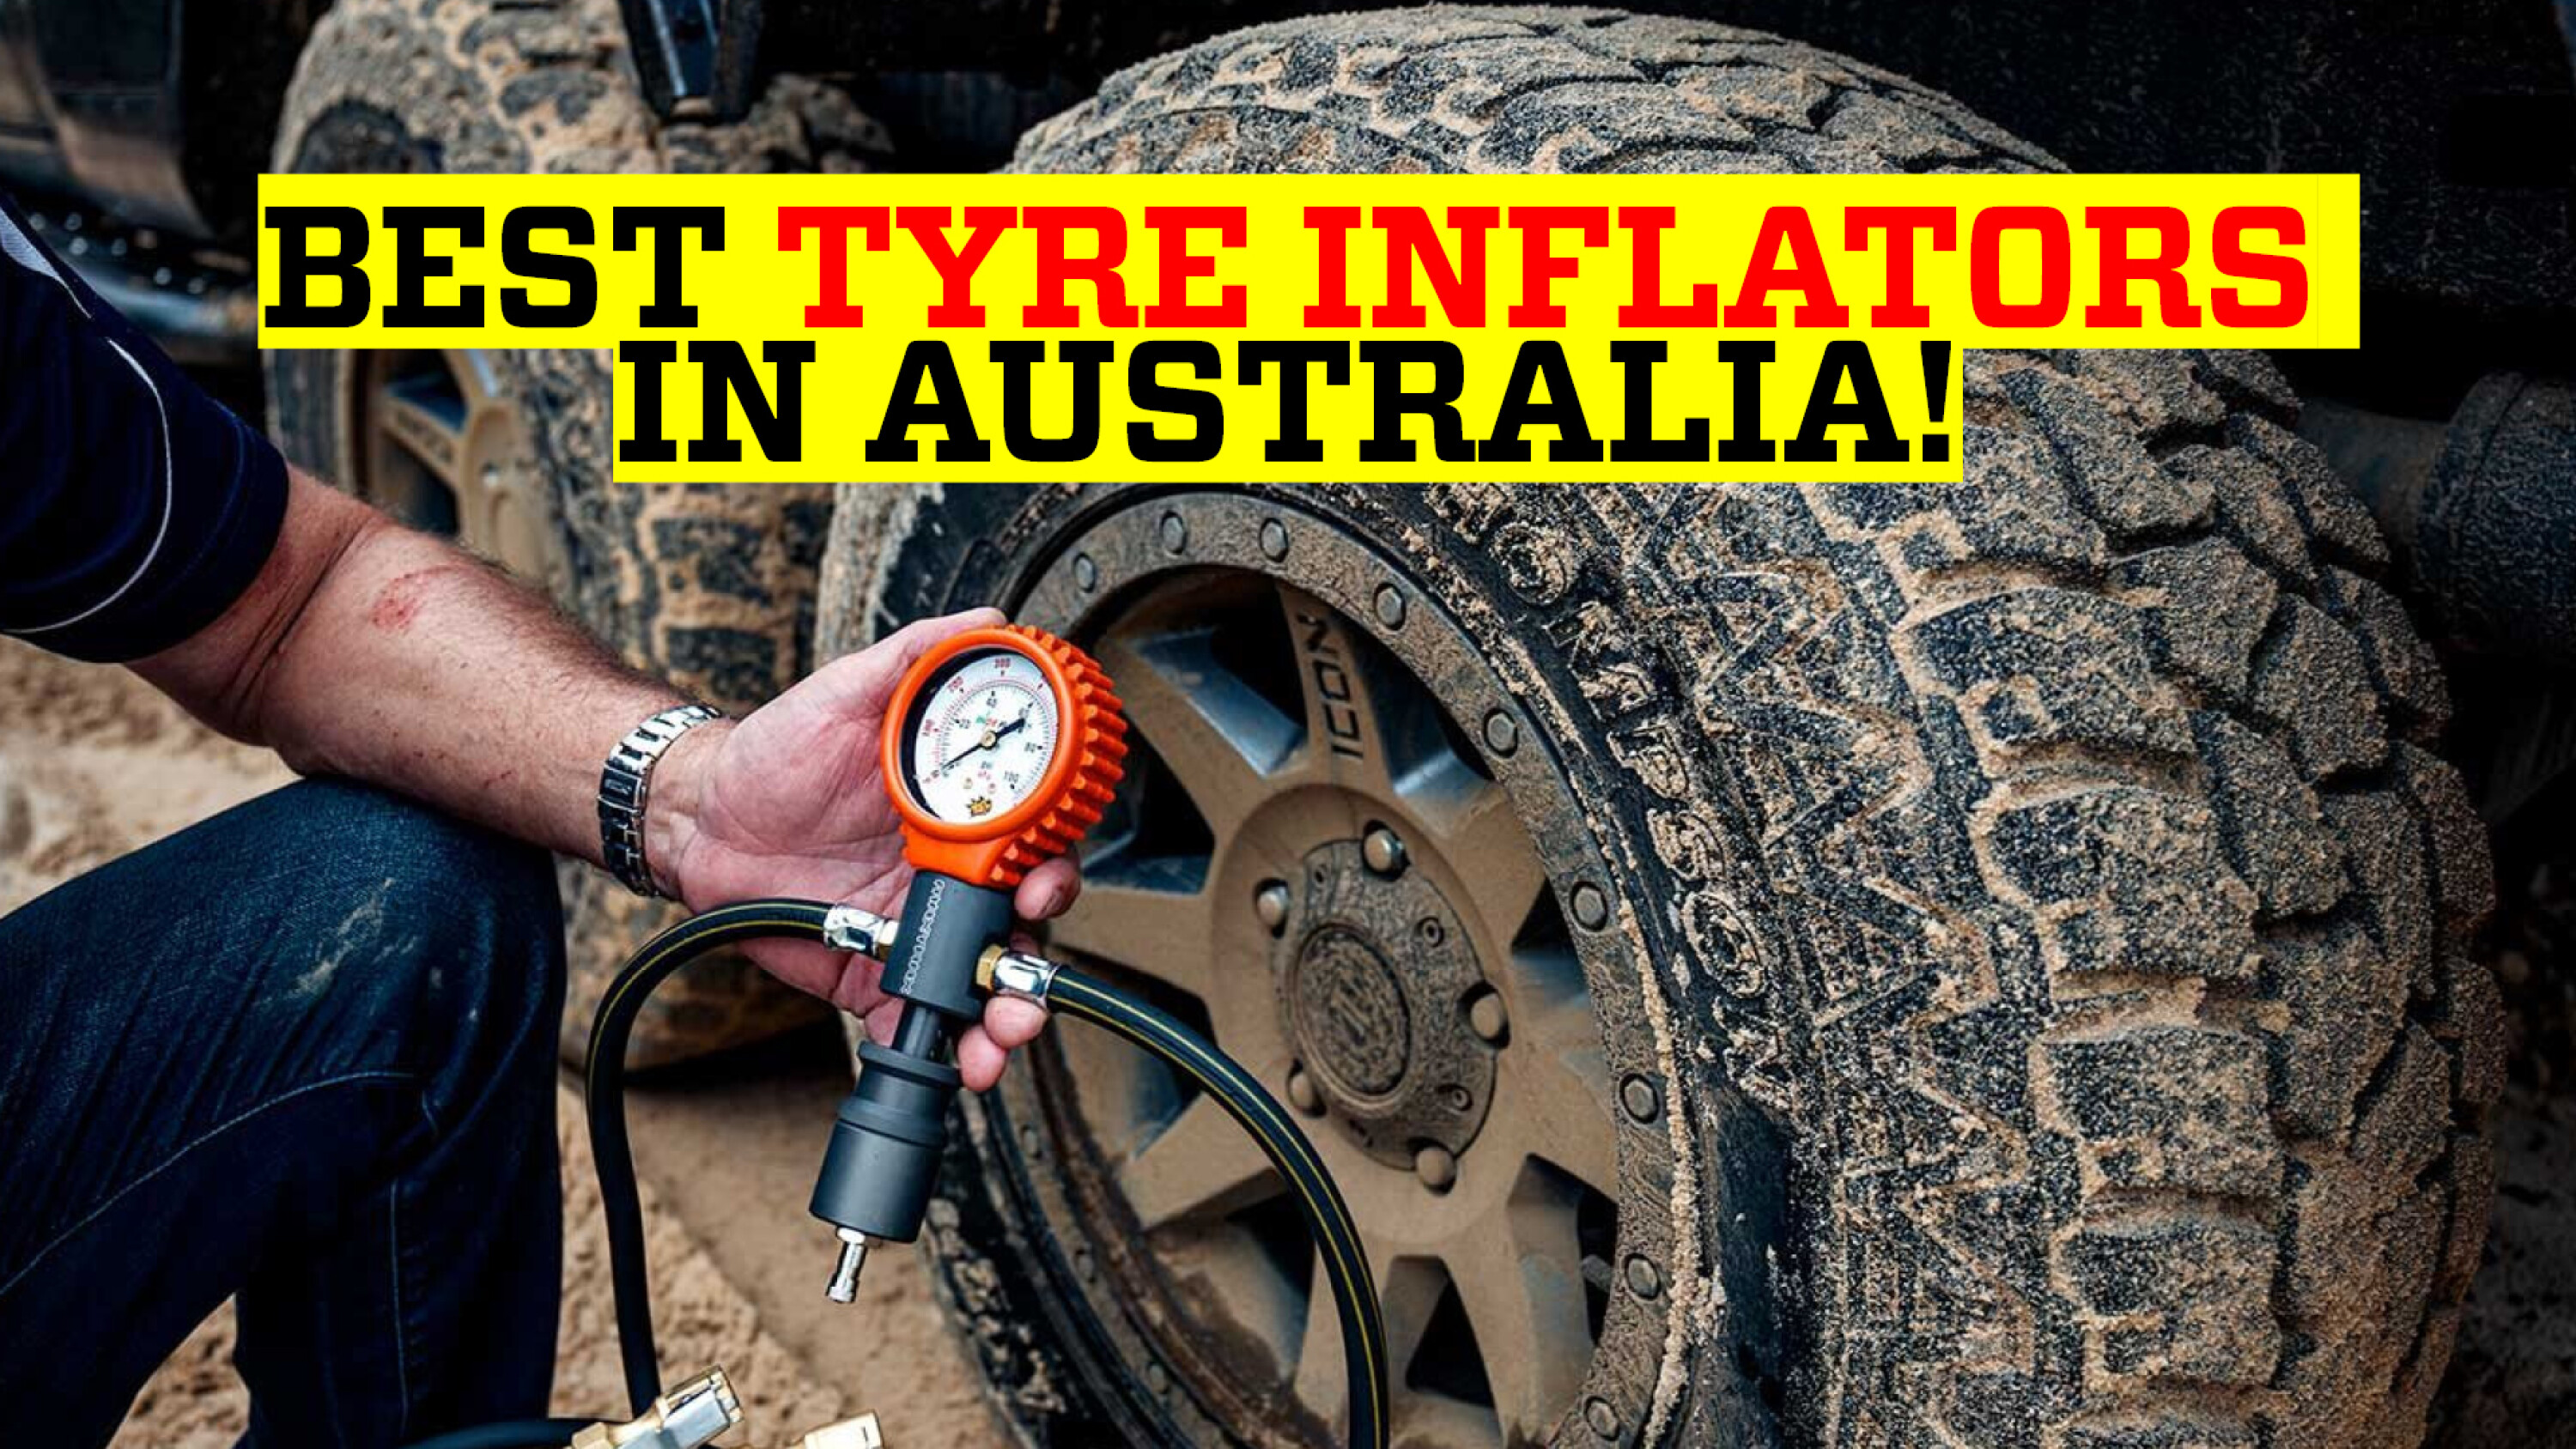 0bae1246/best tyre inflators guide jpg